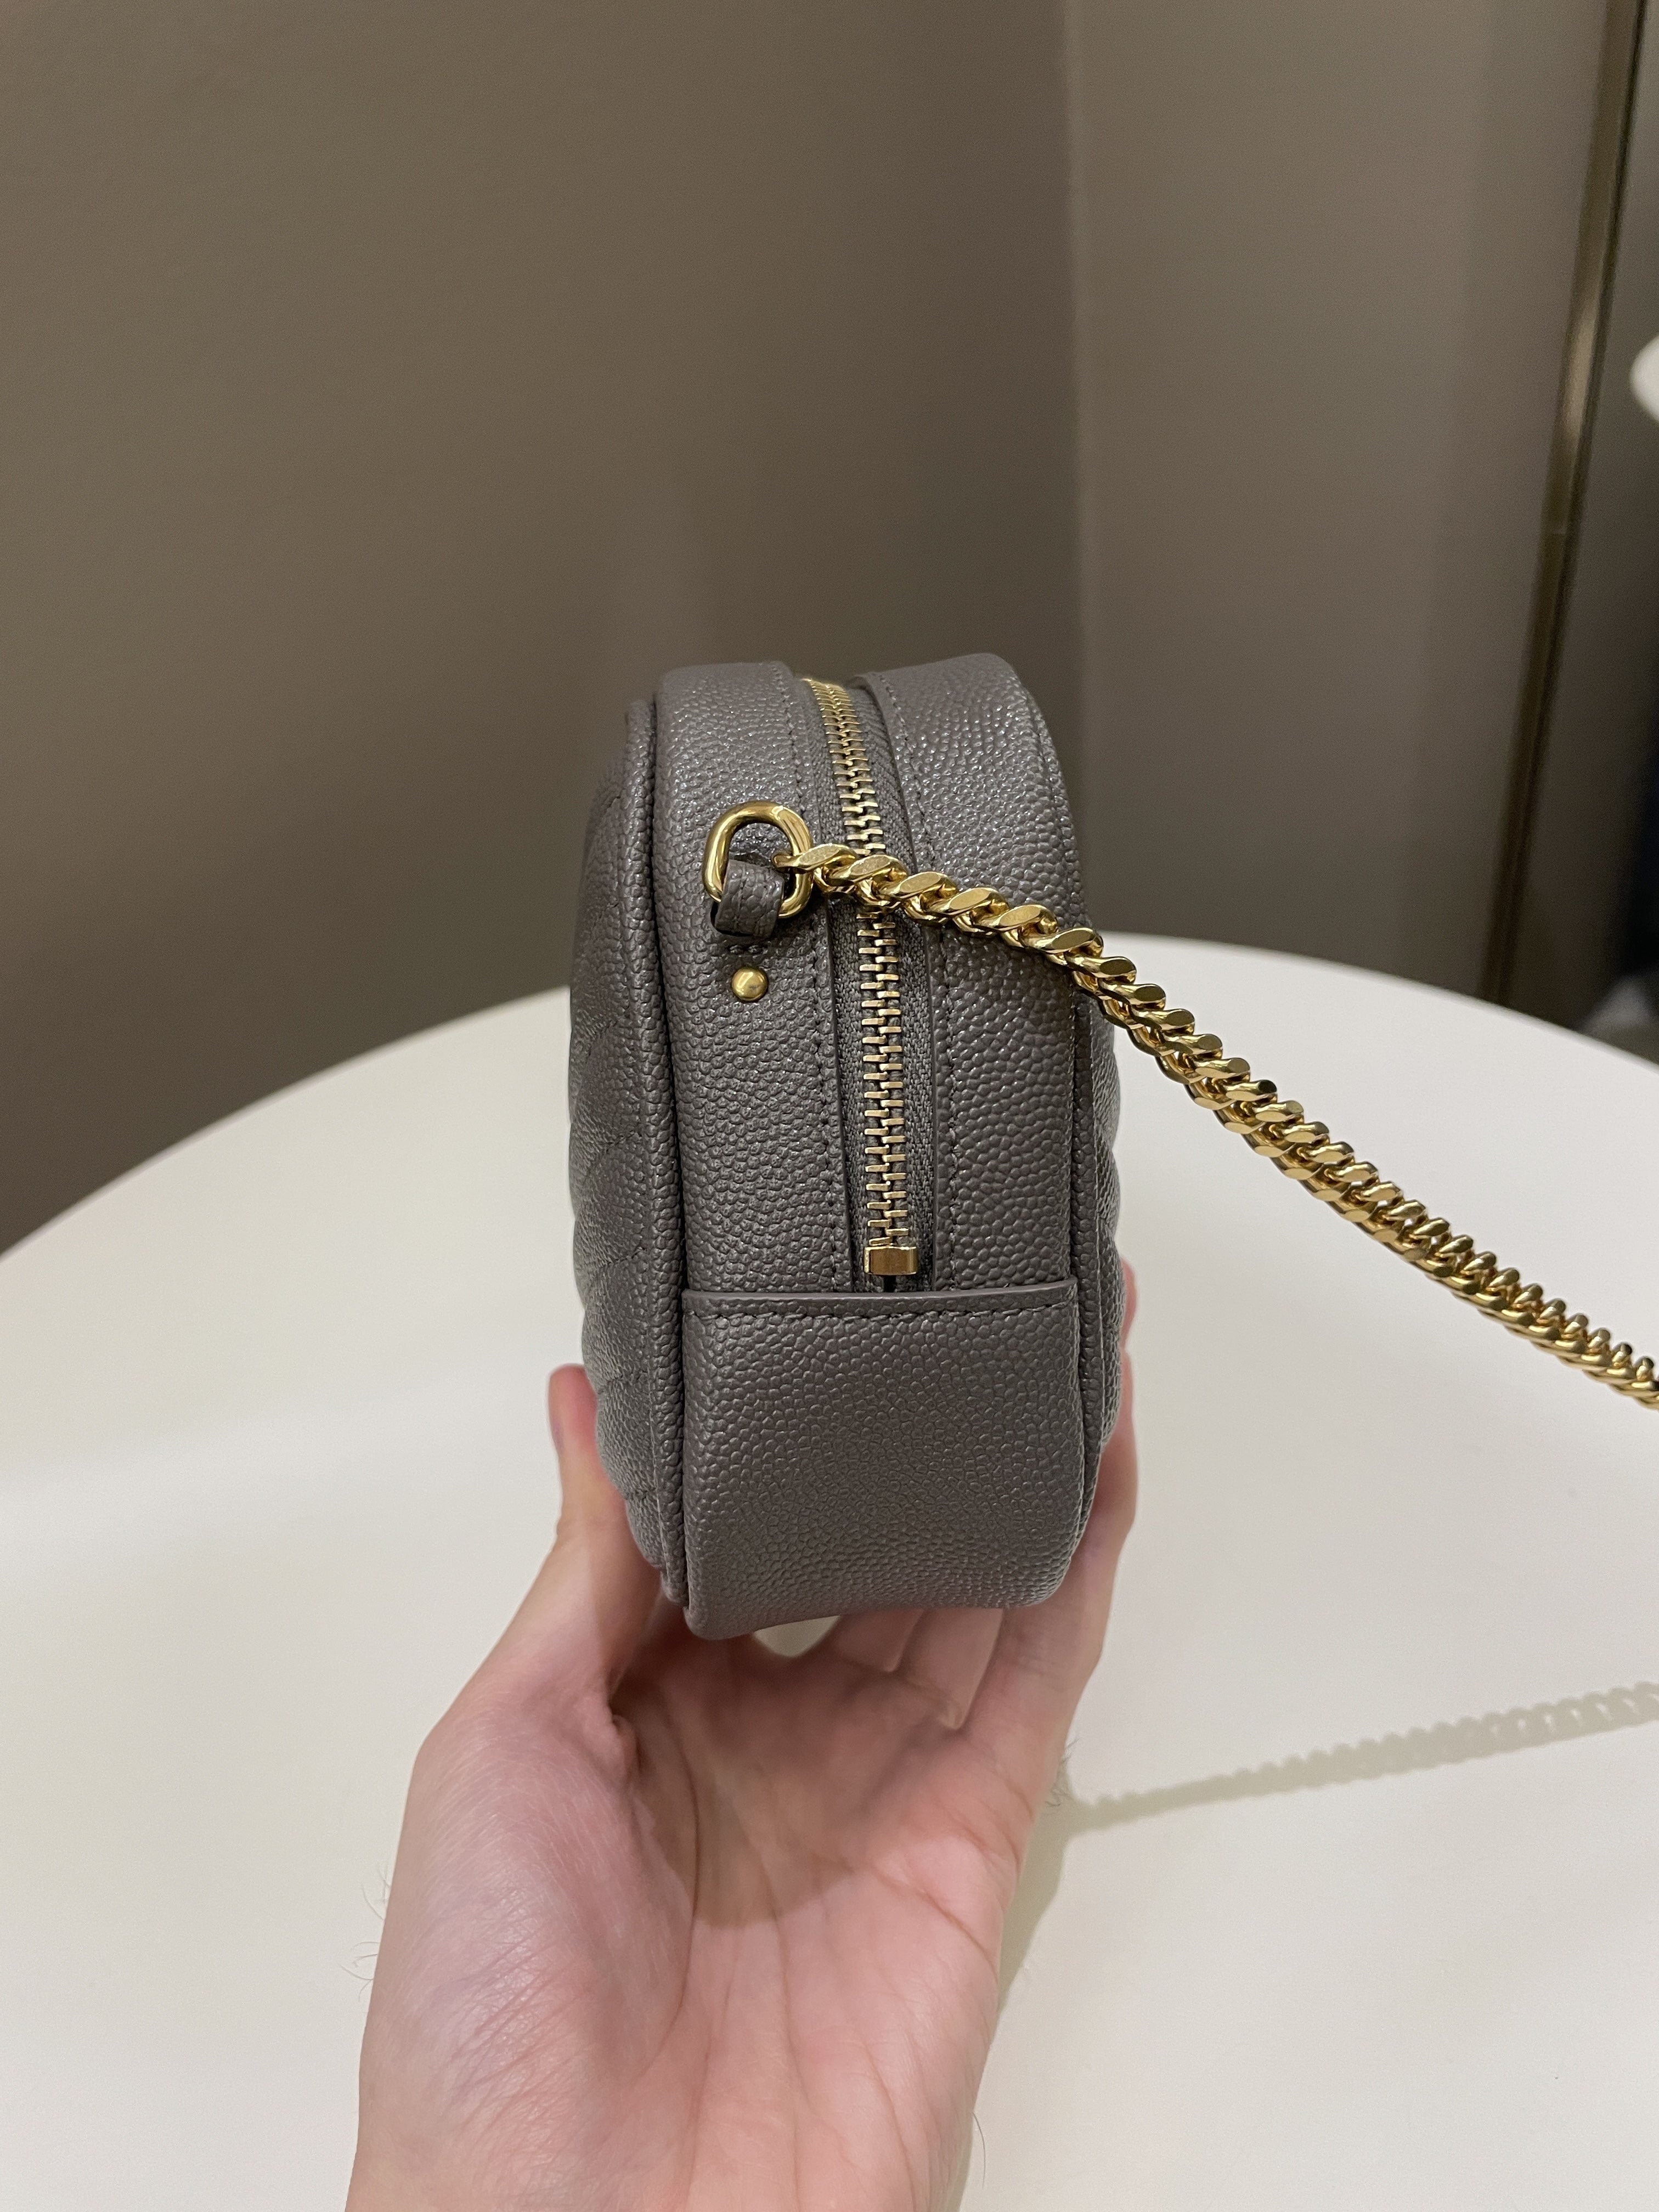 Saint Laurent Lou Mini Bag
Grey Grained Leather